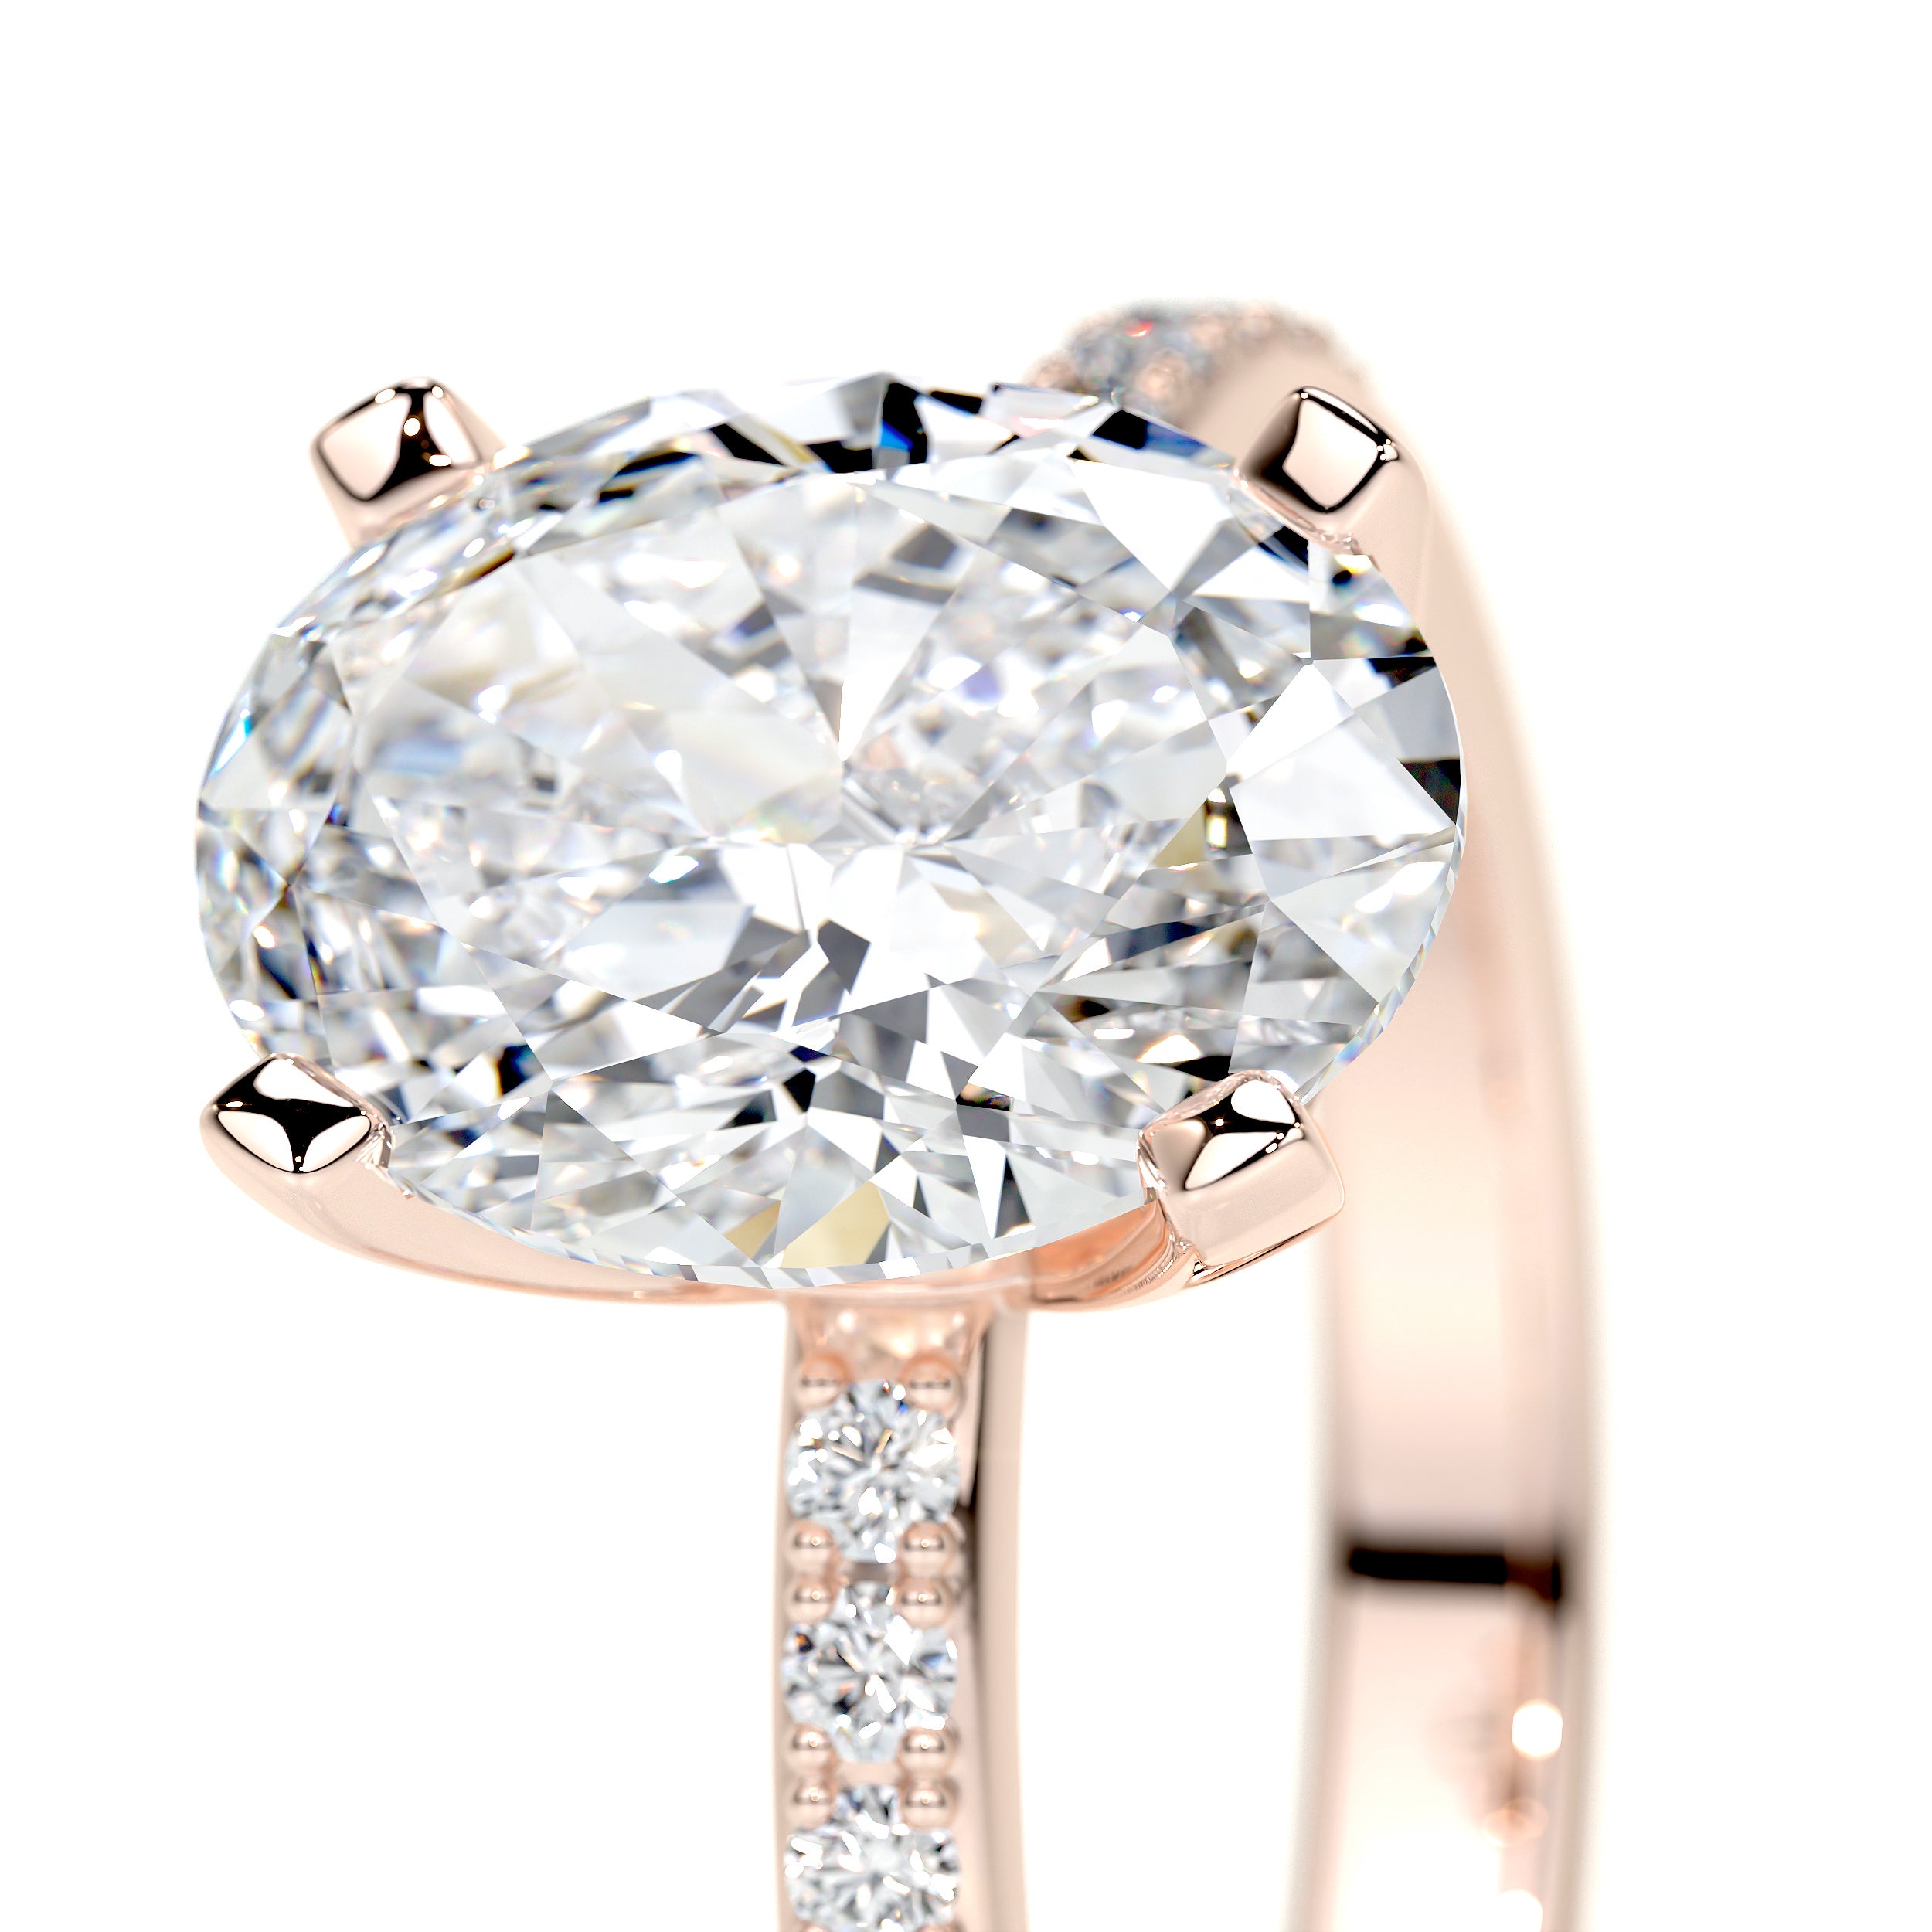 Samantha Lab Grown Diamond Ring   (2.15 Carat) -14K Rose Gold